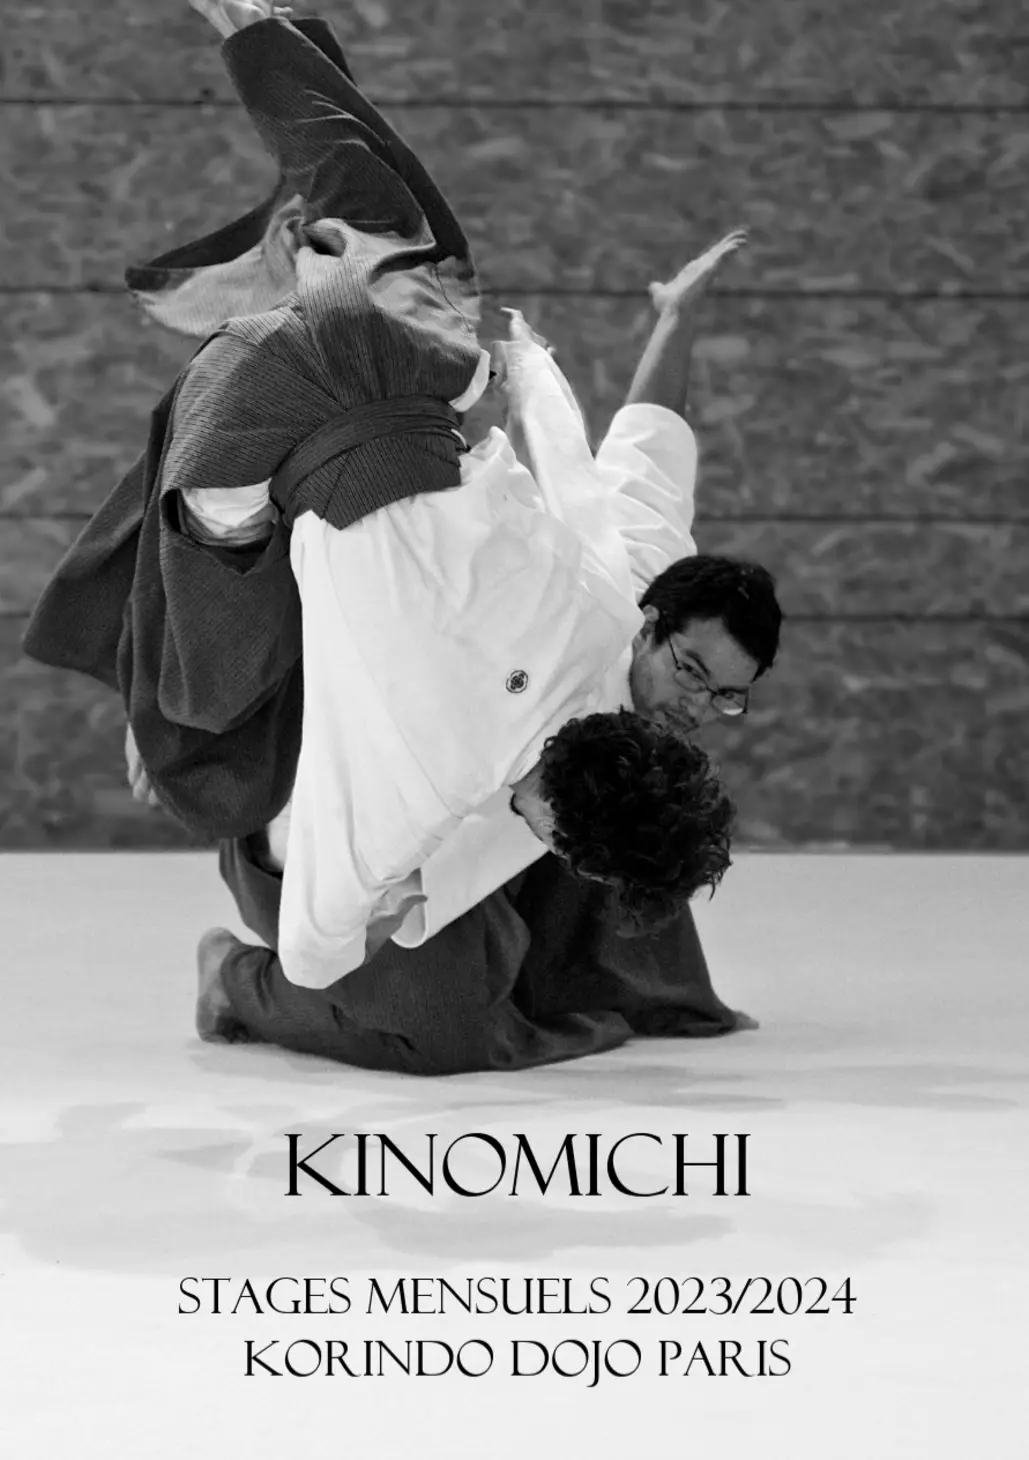 Affiche du Stage d'Aïkido à Paris animé par Takeharu Noro du samedi 9 mars 2024 au dimanche 10 mars 2024